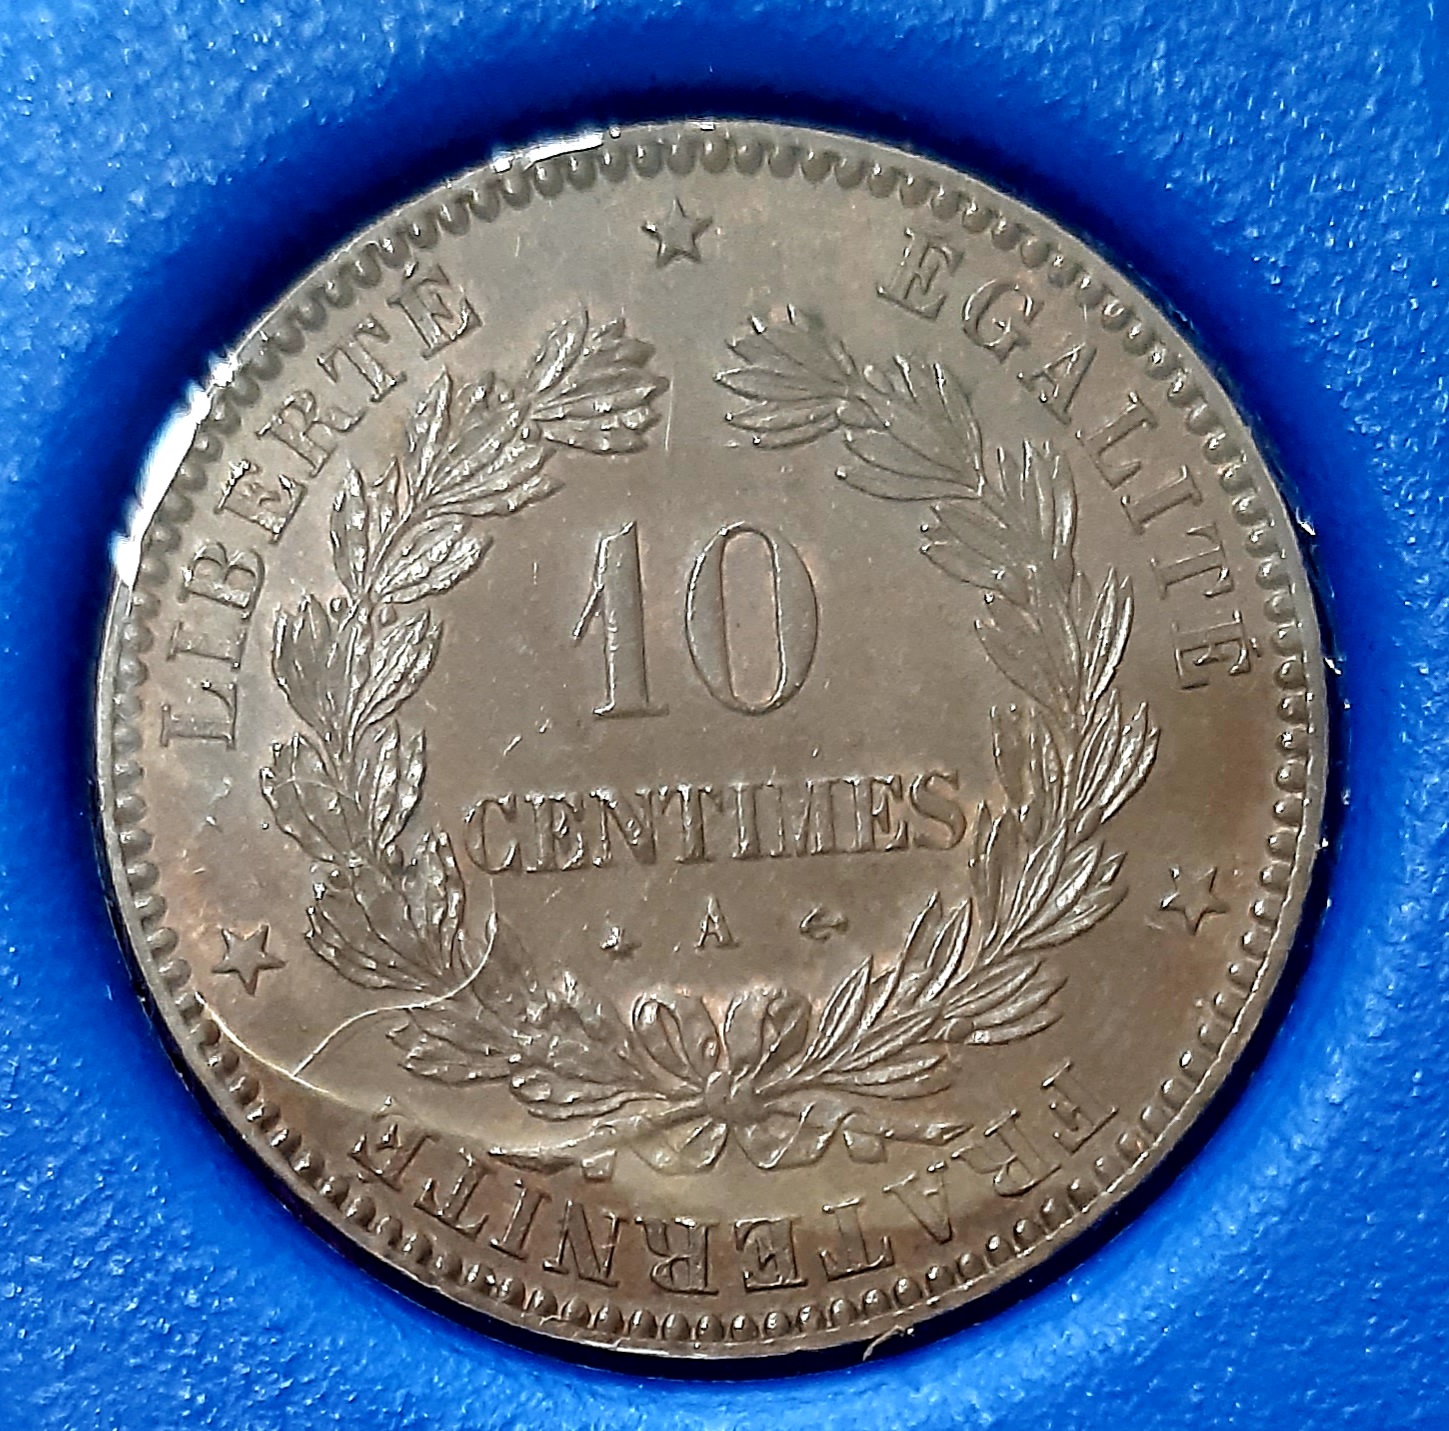 10 Centimes Cérès 1870 A. Paris